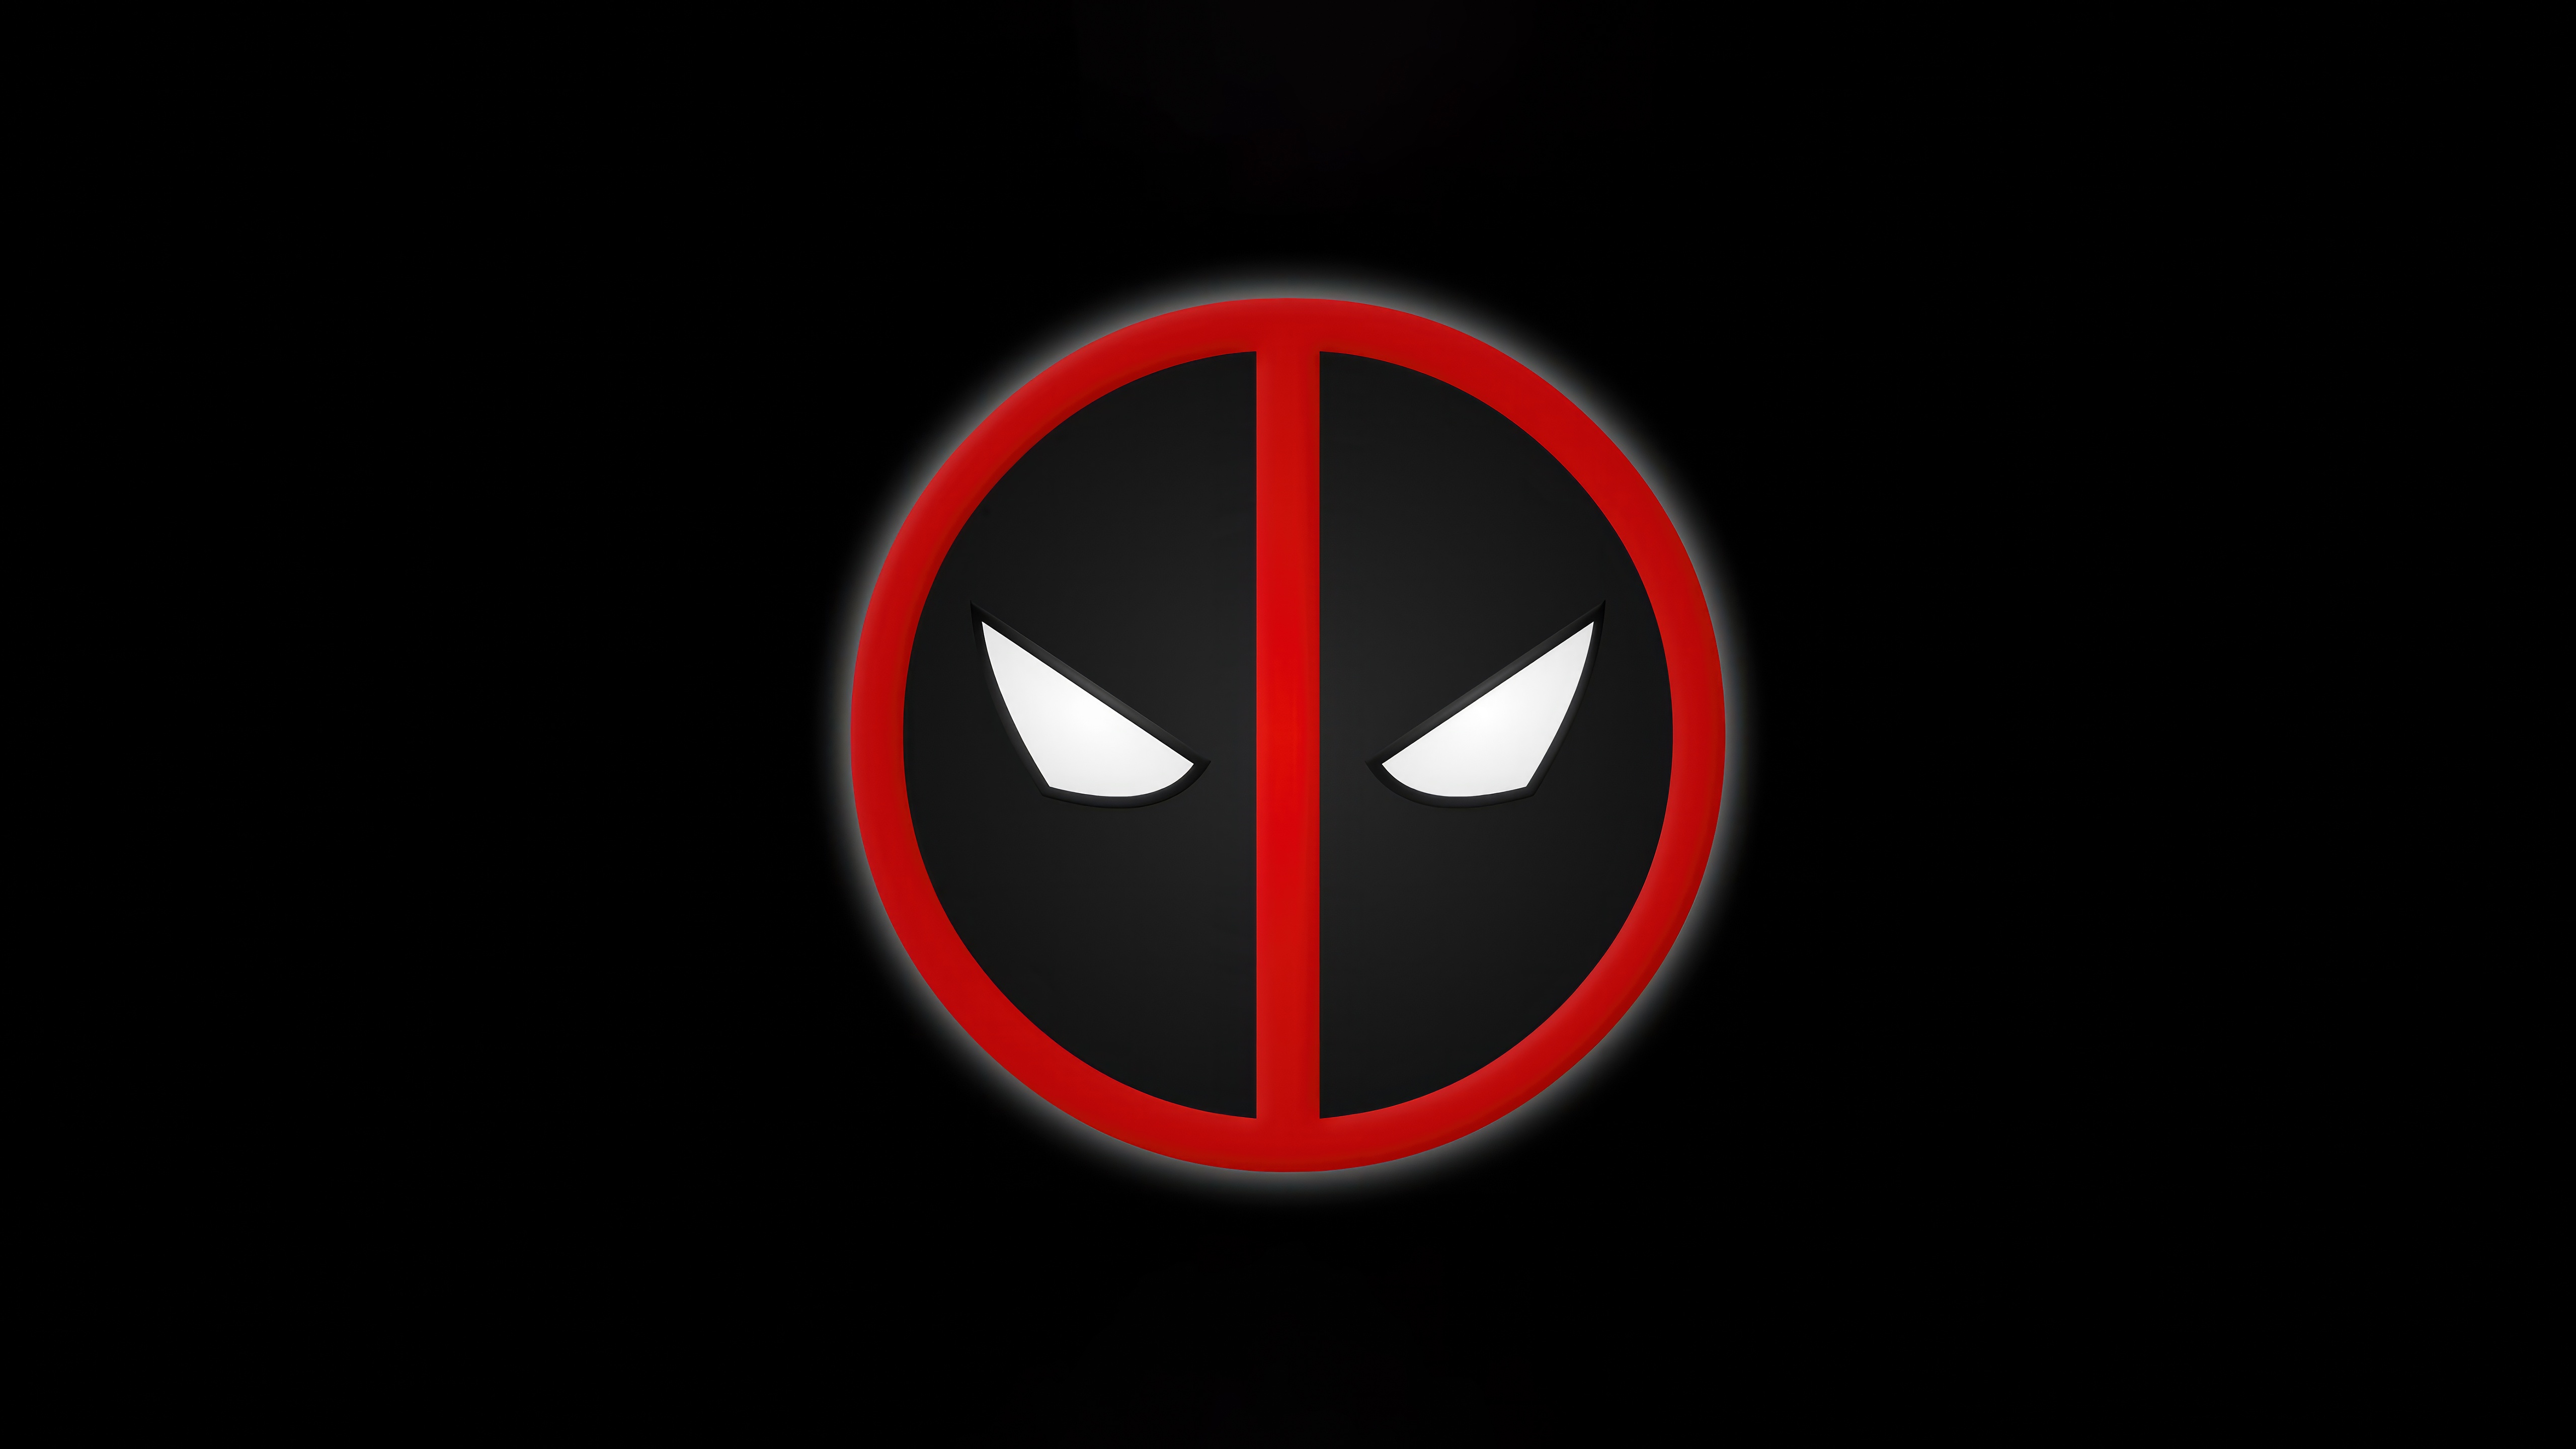 Fondos de pantalla Deadpool minimalist logo